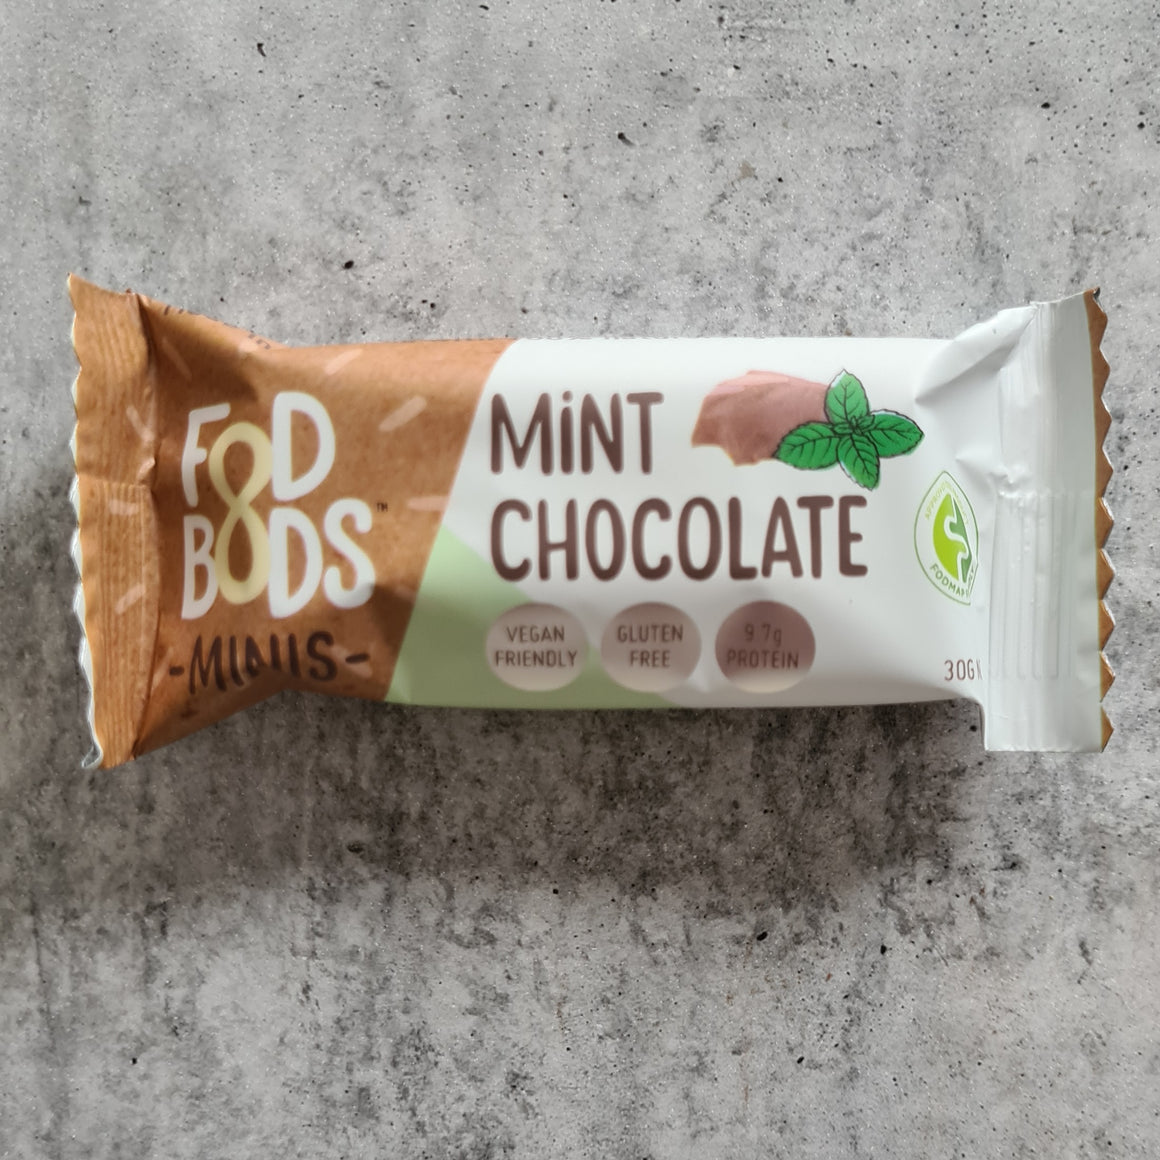 Fodbods - Mint Chocolate Bar (30g) - Foddies